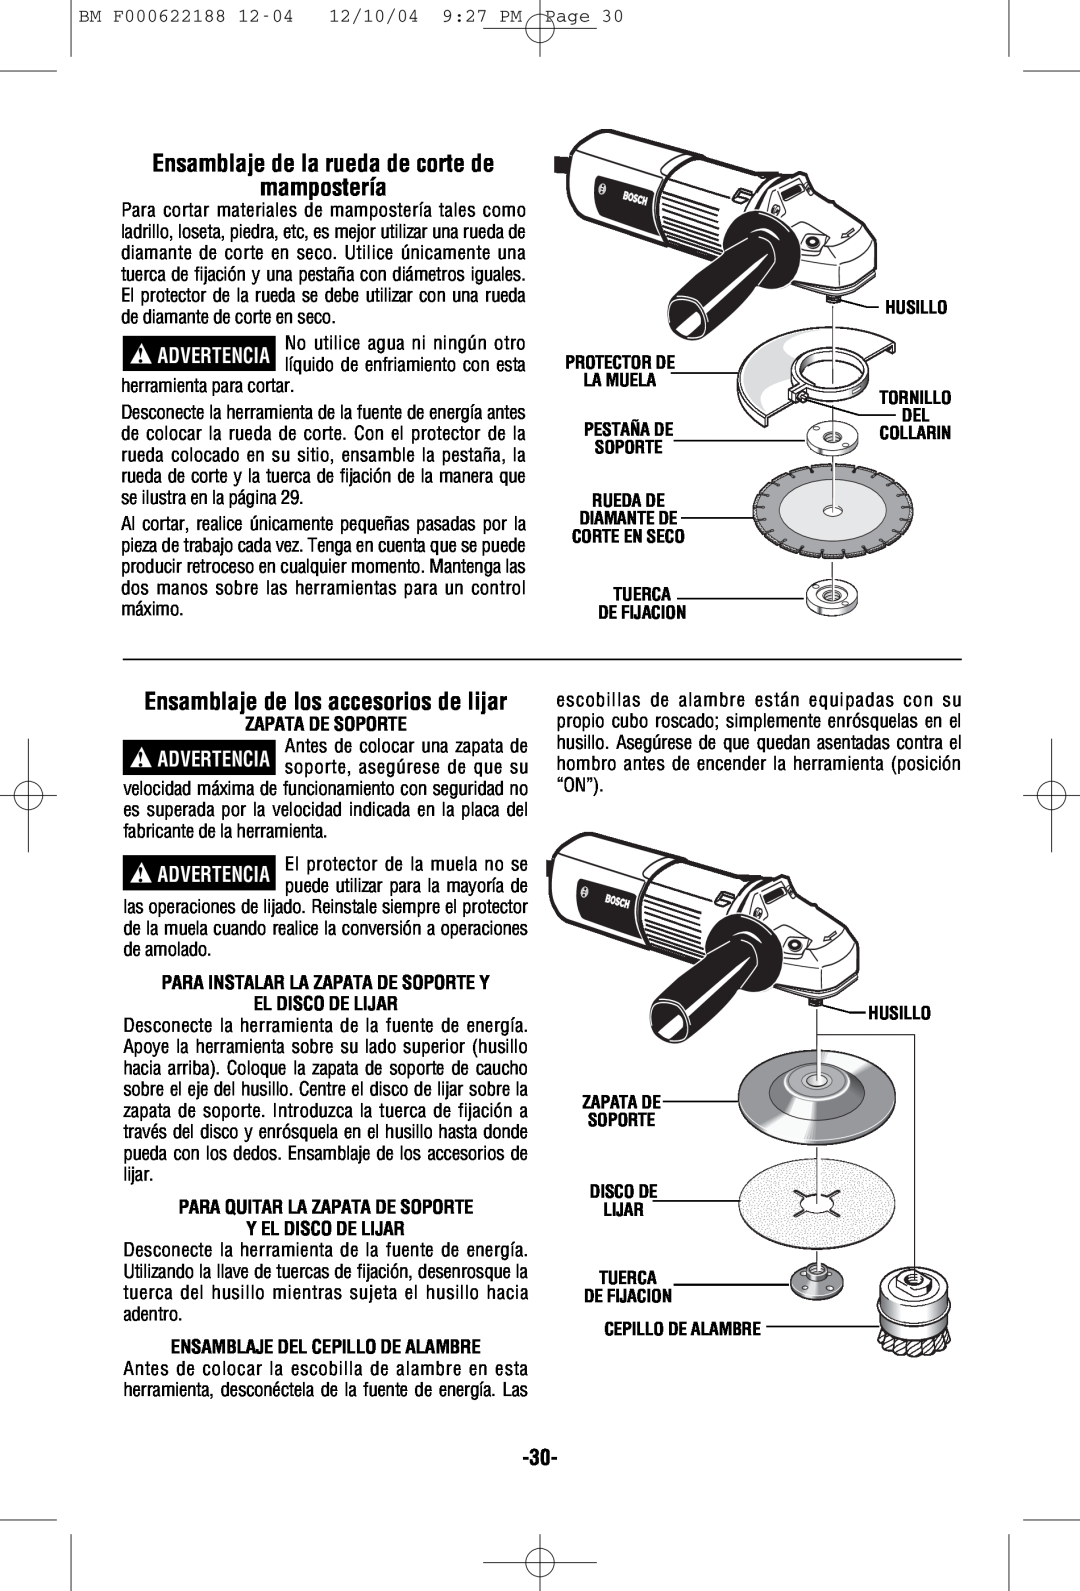 Bosch Power Tools 1348AE, 1347A manual Ensamblaje de la rueda de corte de mampostería, Ensamblaje de los accesorios de lijar 